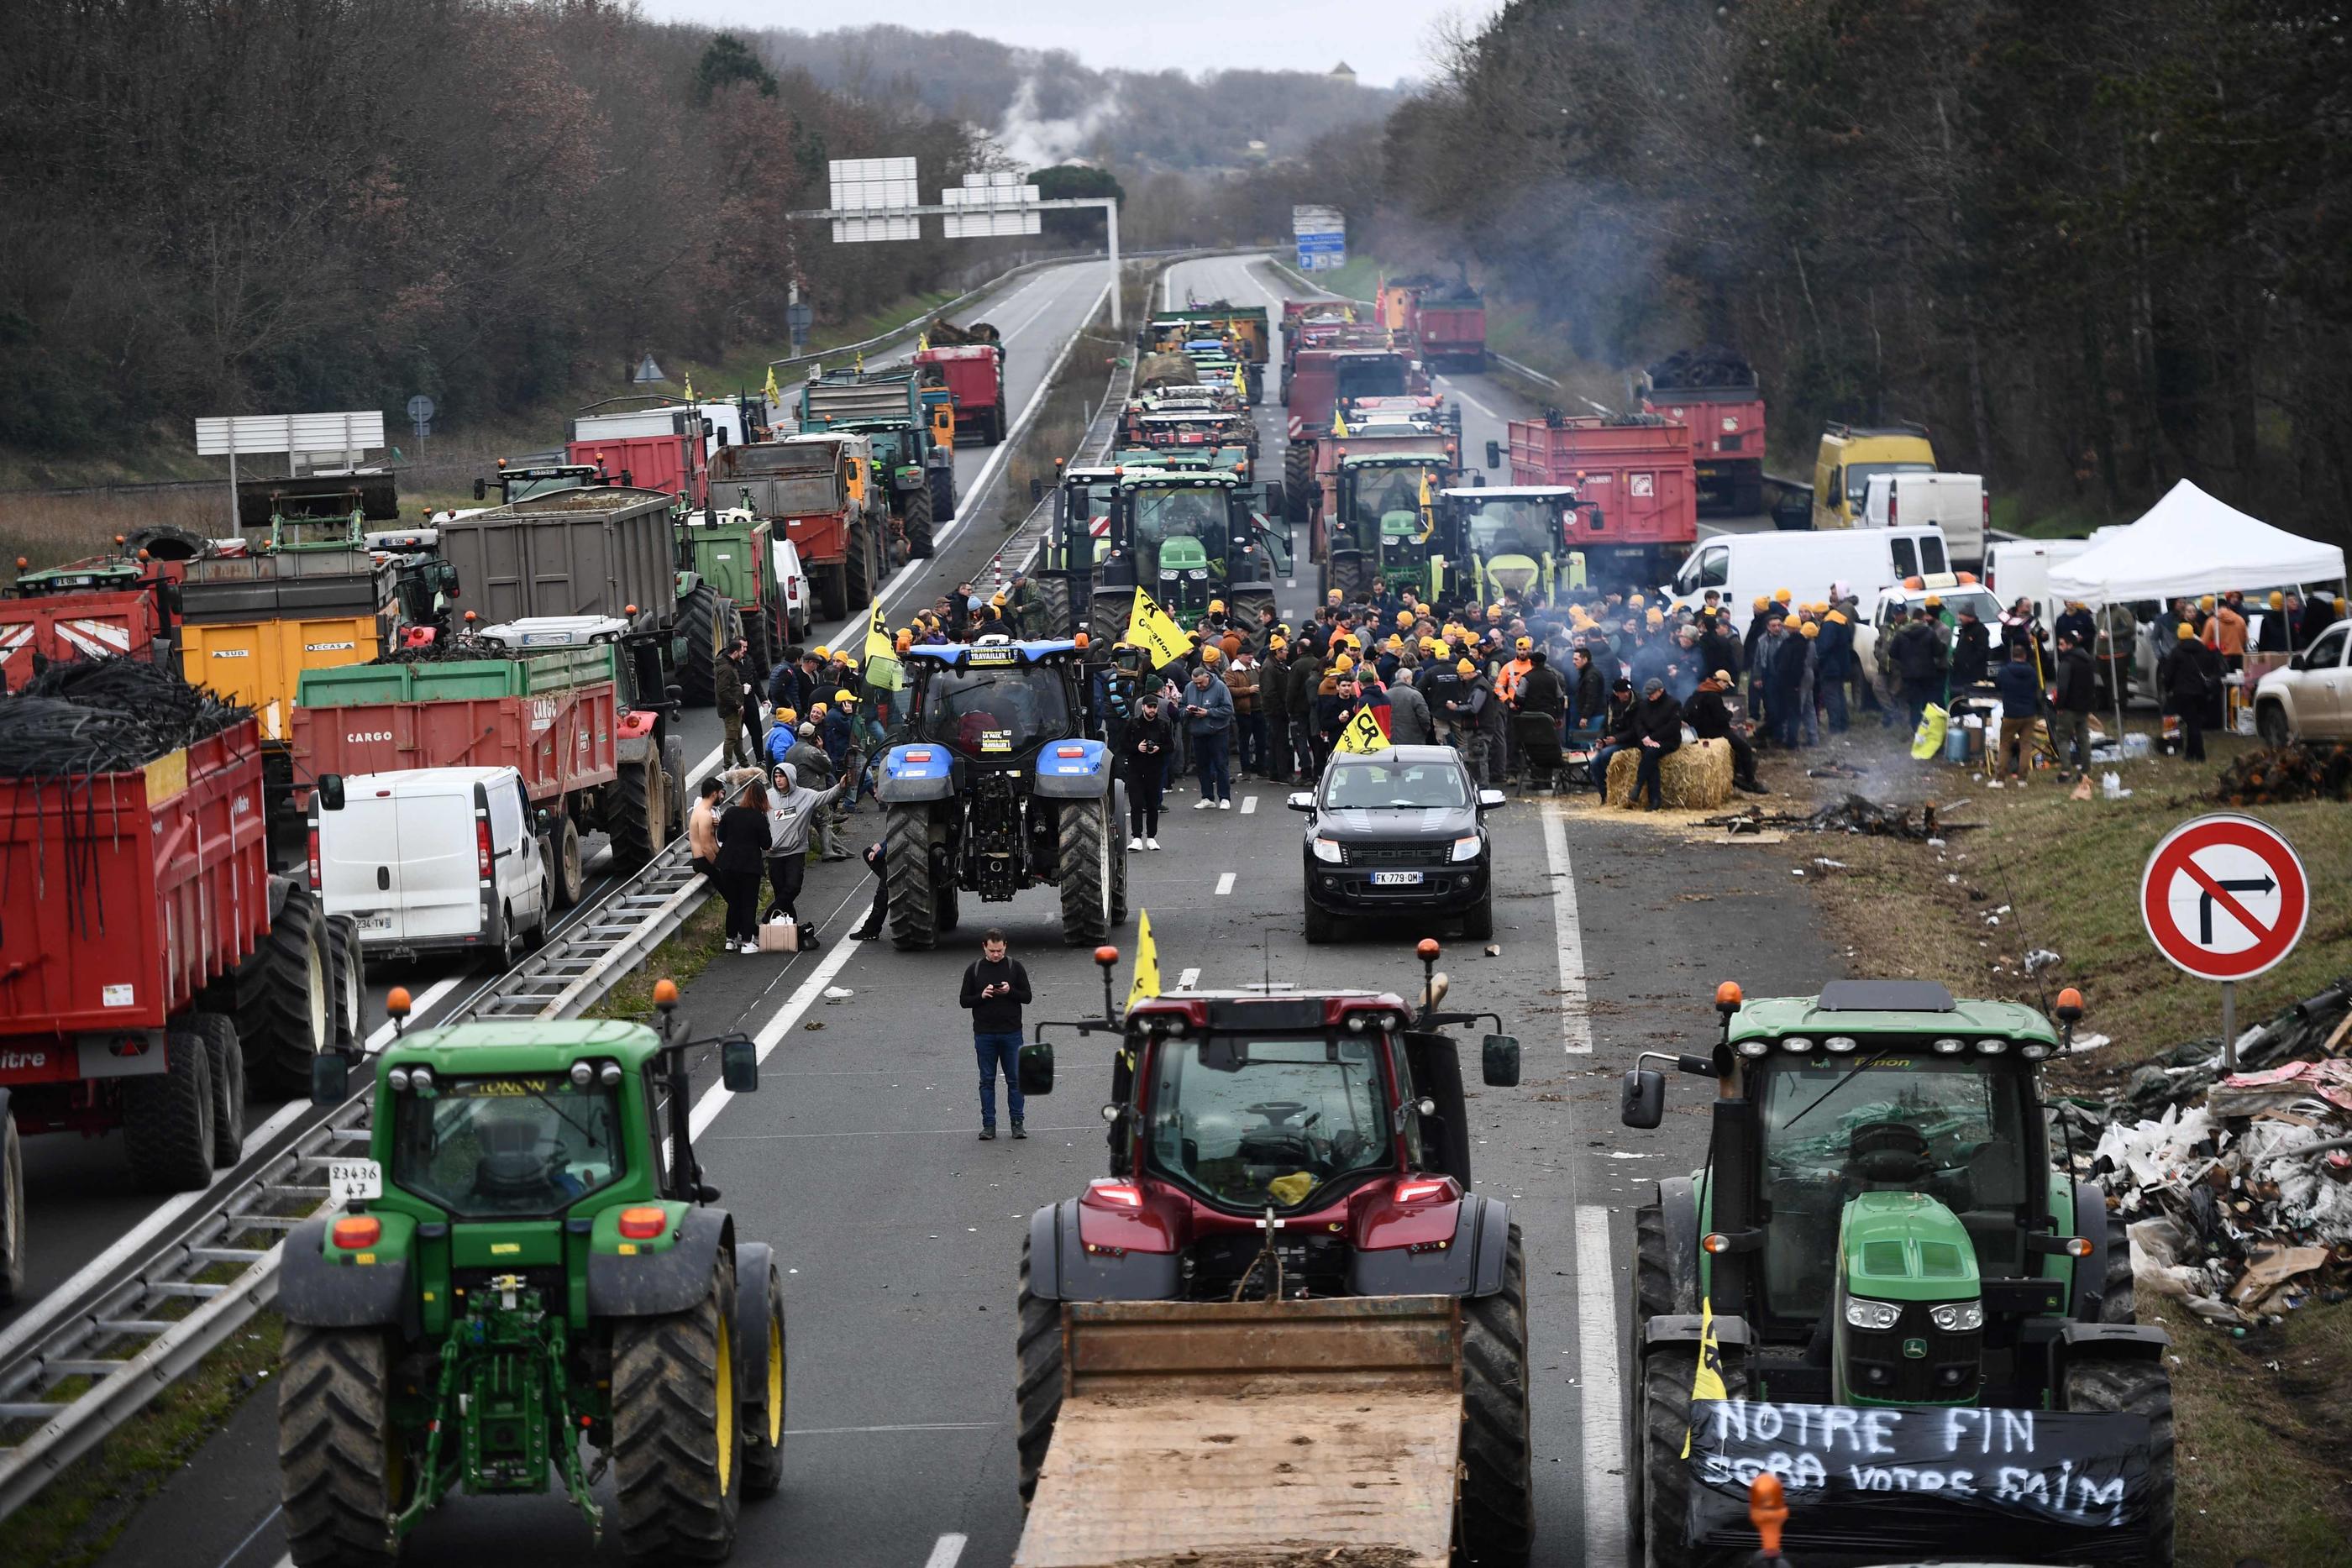 Les agriculteurs ont bloqué plusieurs axes routiers majeurs, comme ici l'A62, vers Agen. AFP/Christophe Archambault